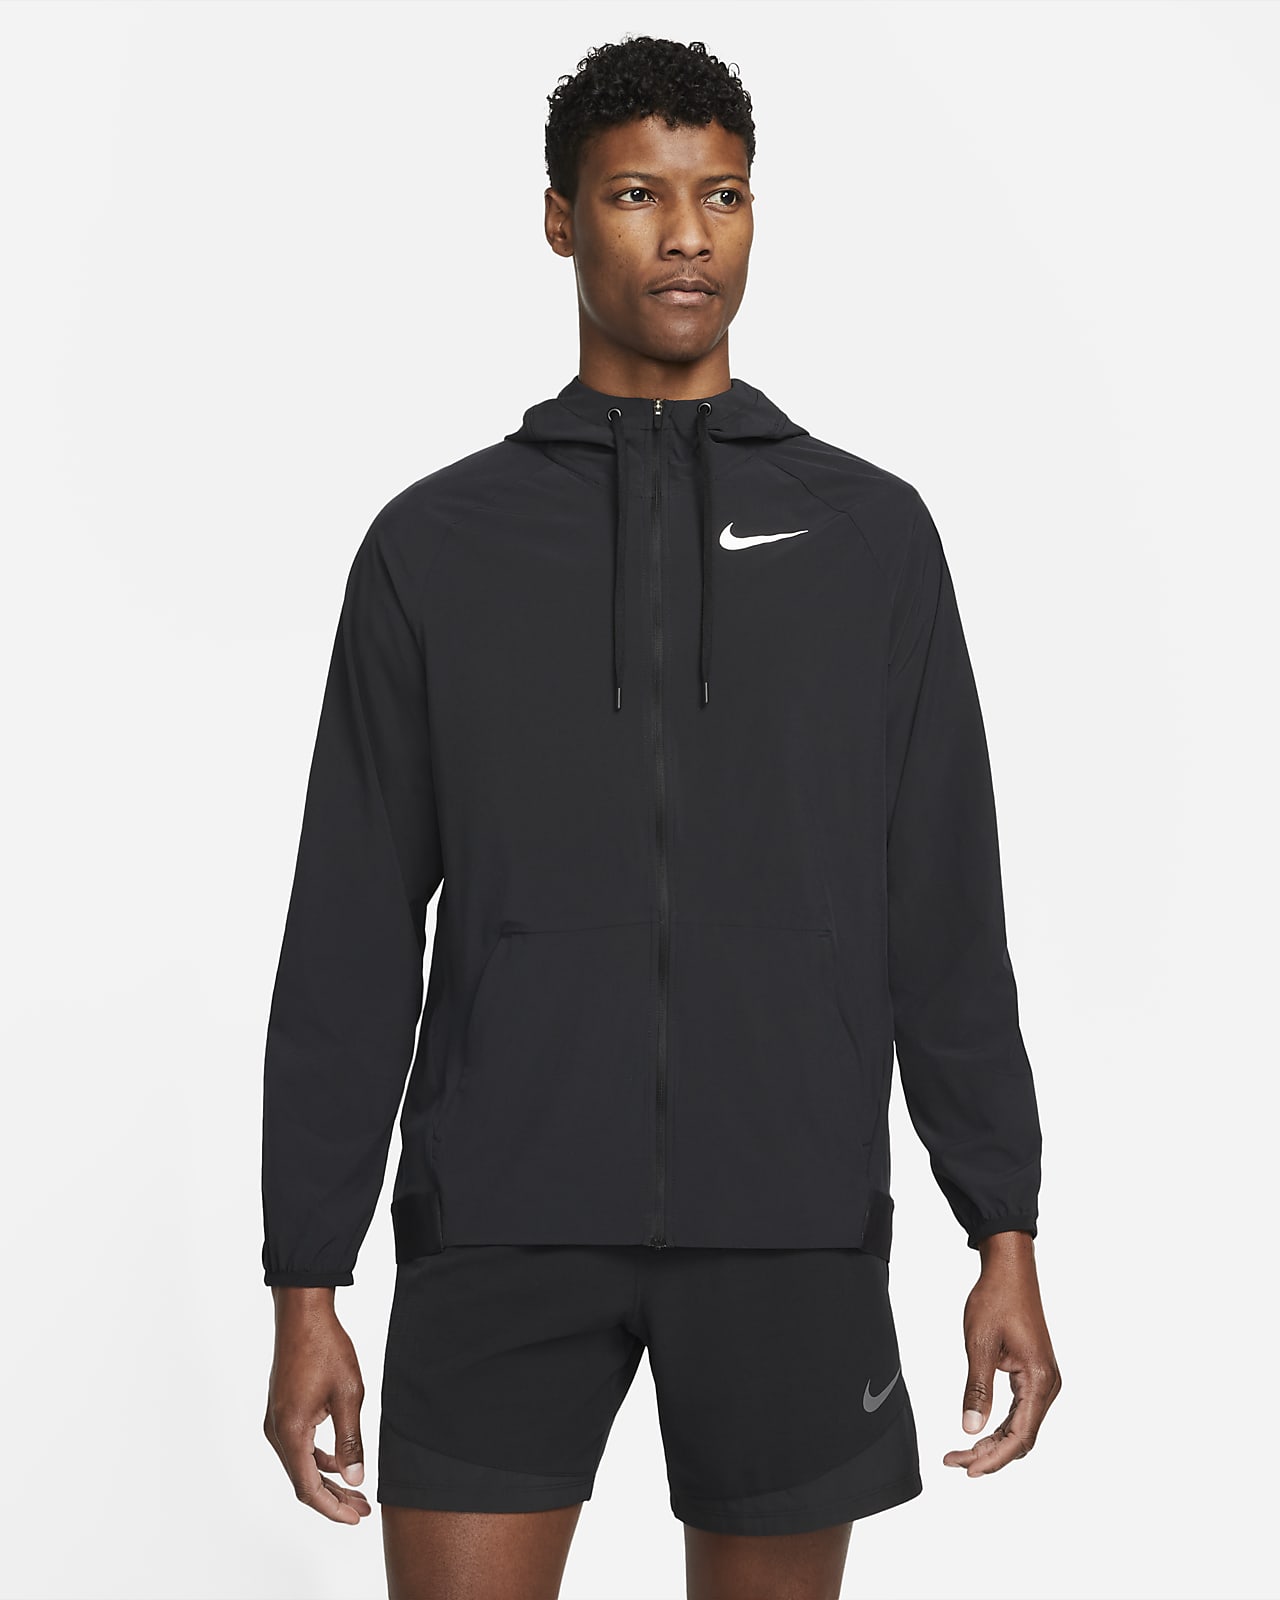 Nike Pro Dri-FIT Flex Vent Max Herren-Trainingsjacke mit Kapuze und durchgehendem Reißverschluss